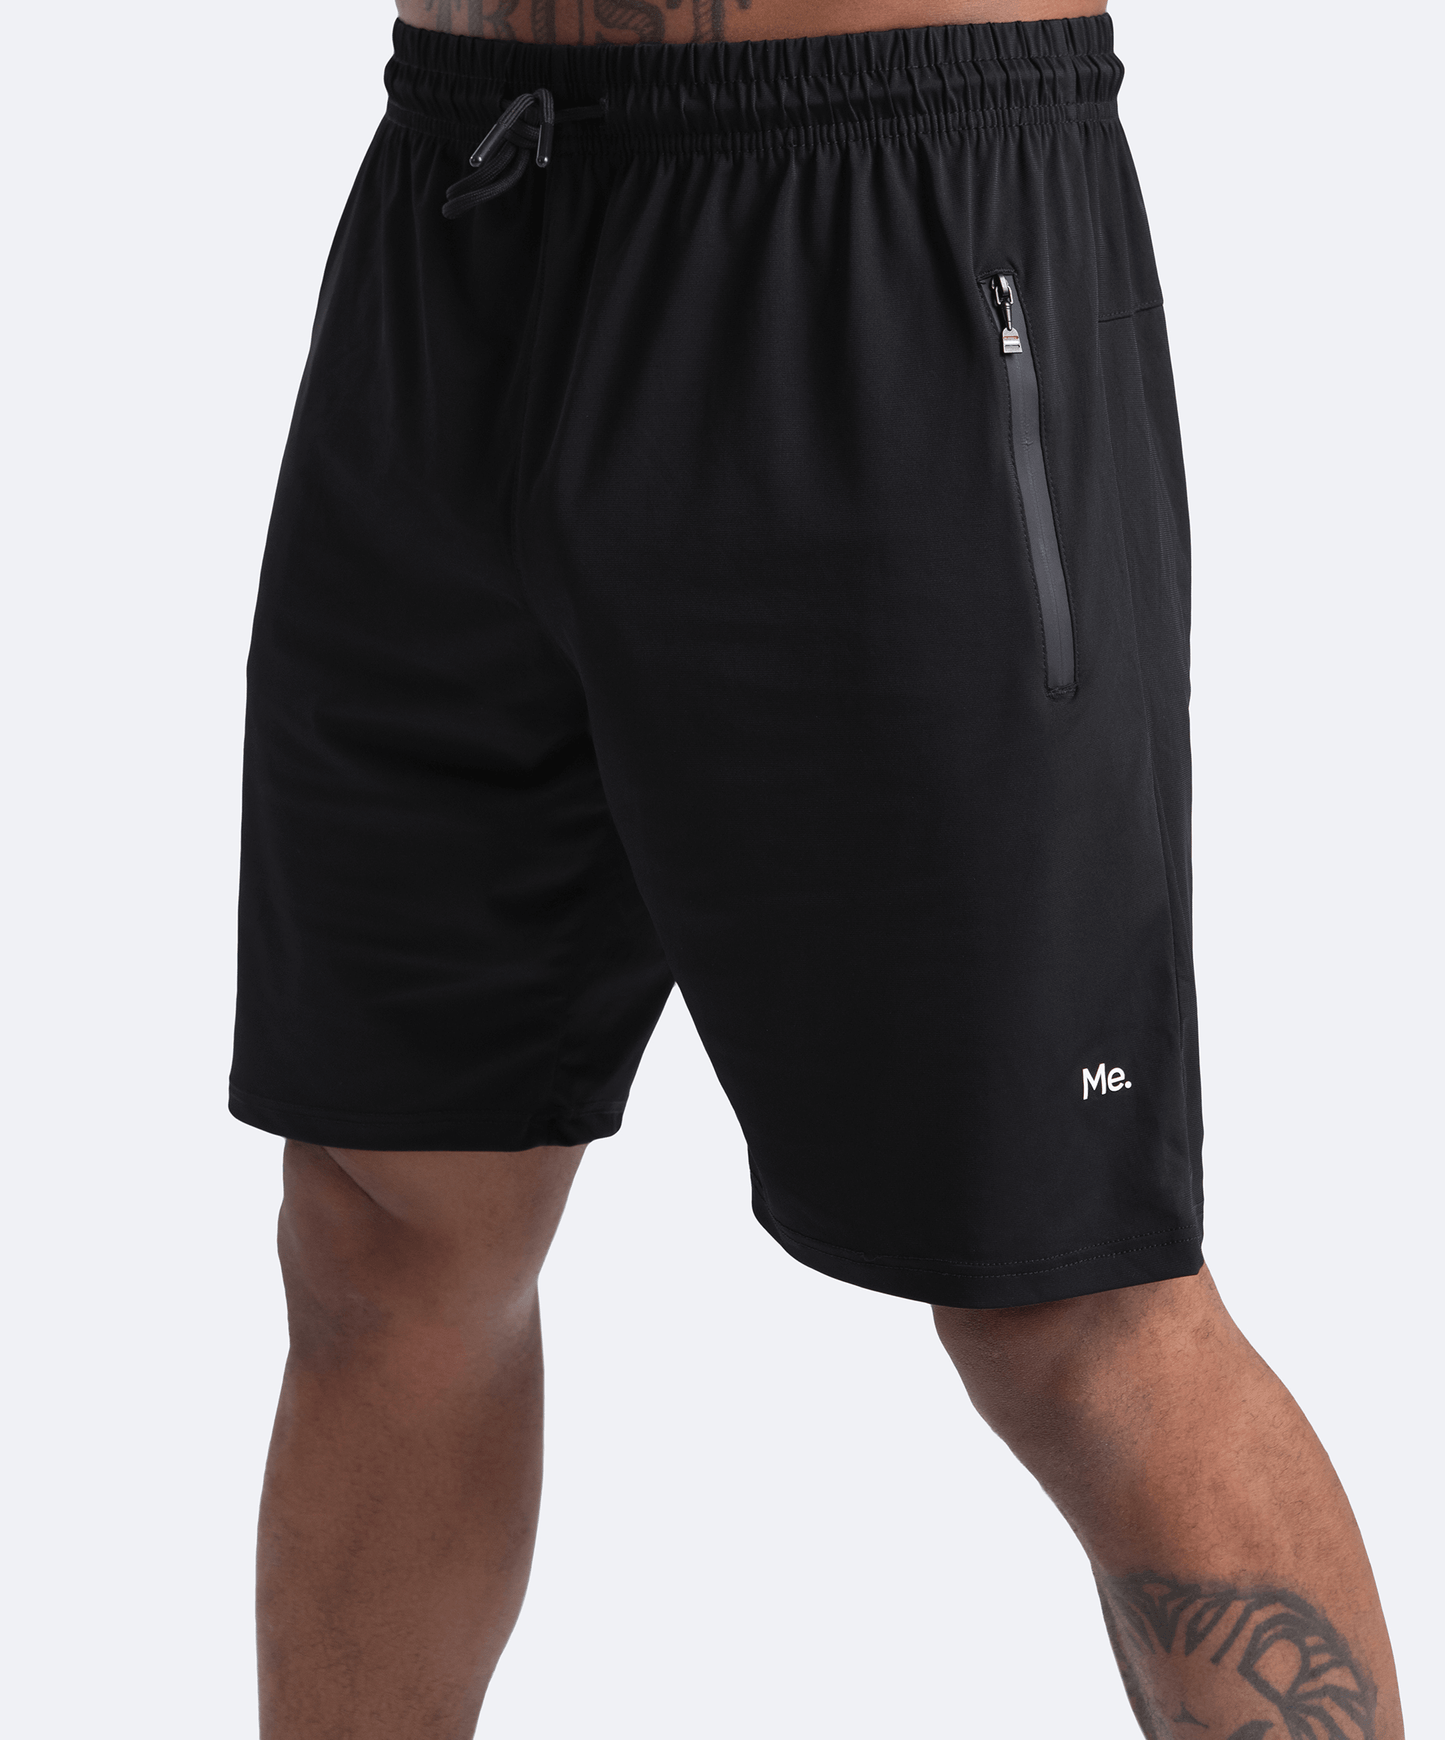 Jet Black Gym Shorts